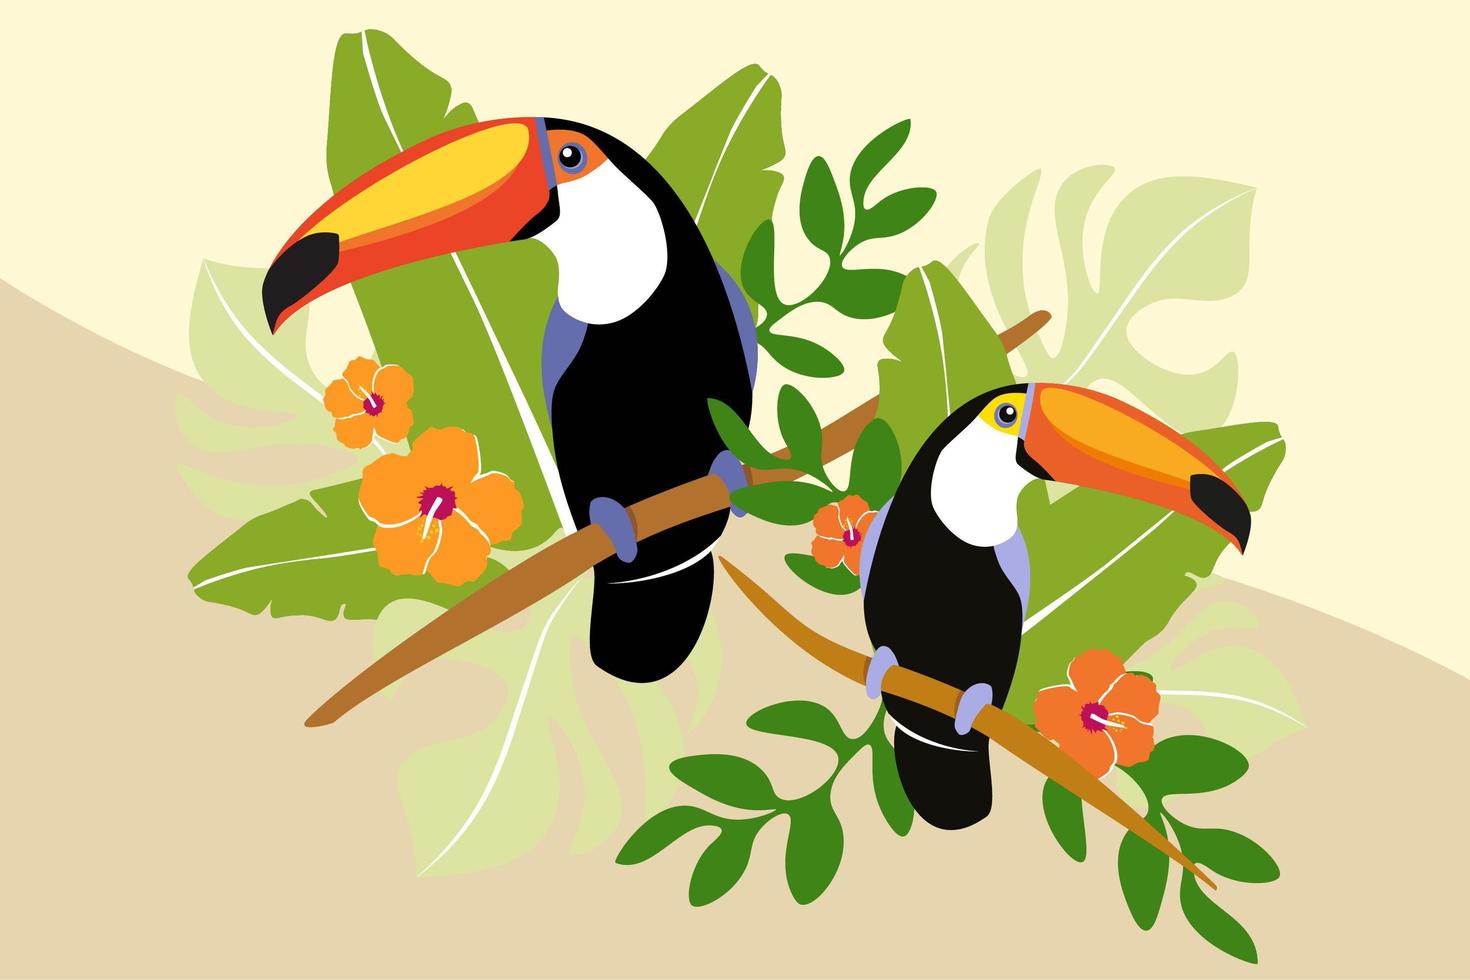 Tukanpaar auf Zweig mit Palmblättern vektor